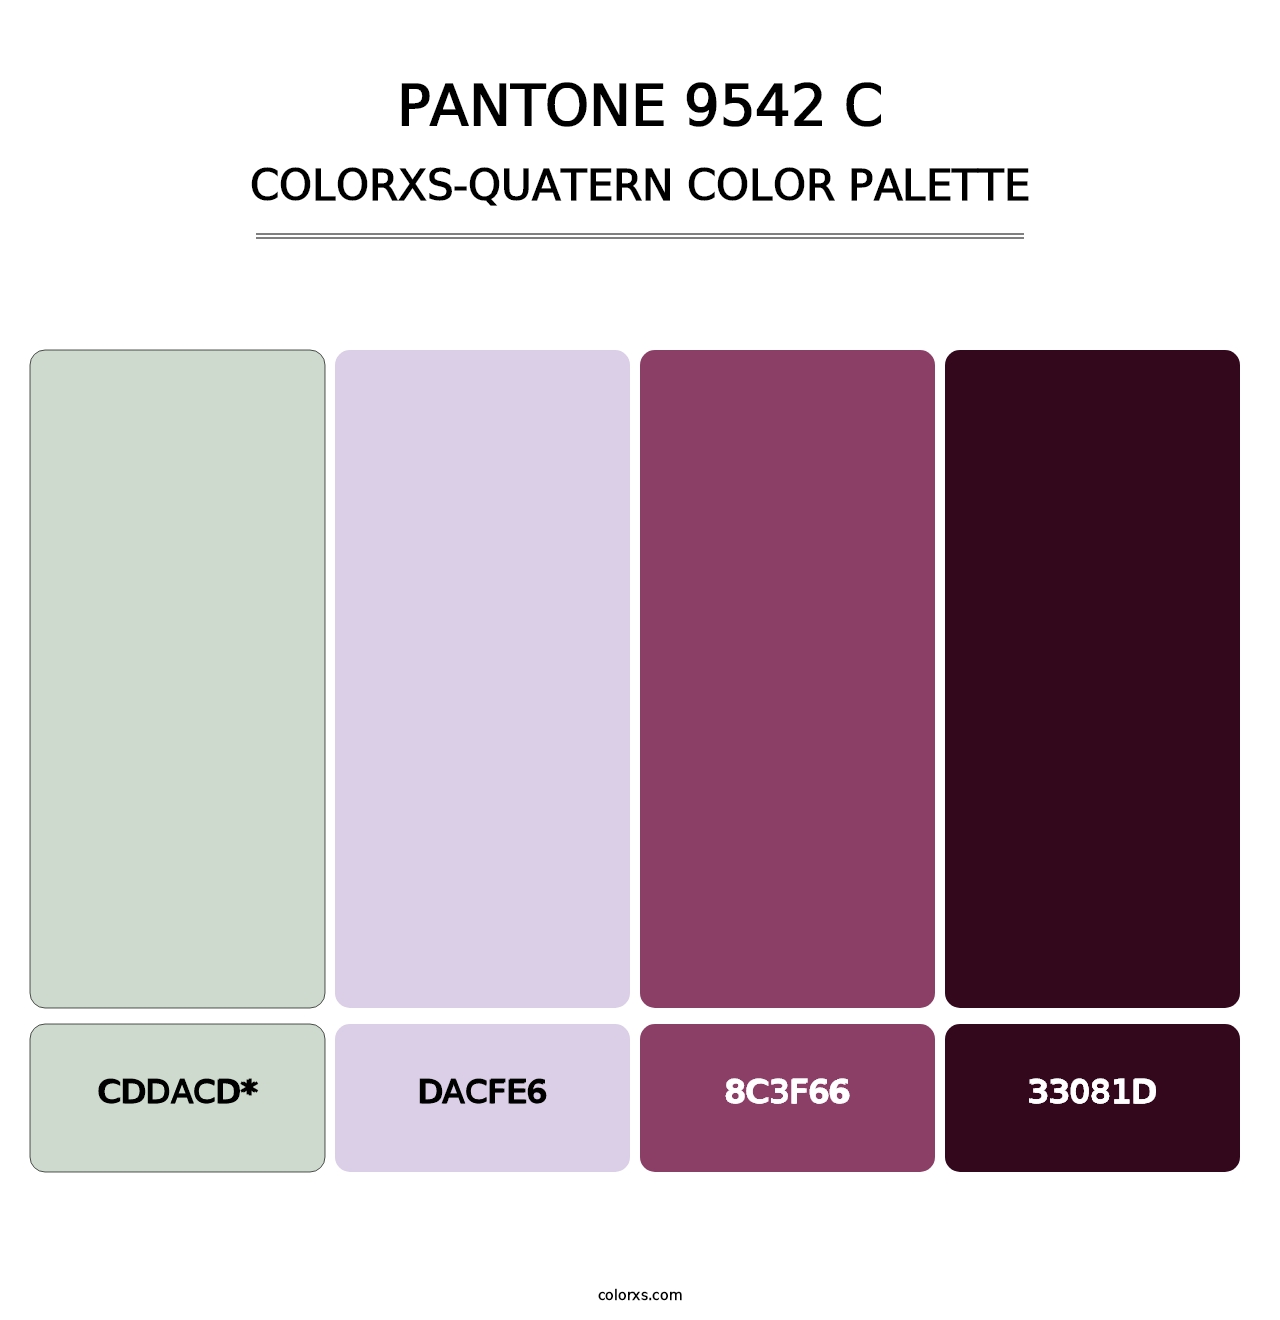 PANTONE 9542 C - Colorxs Quatern Palette